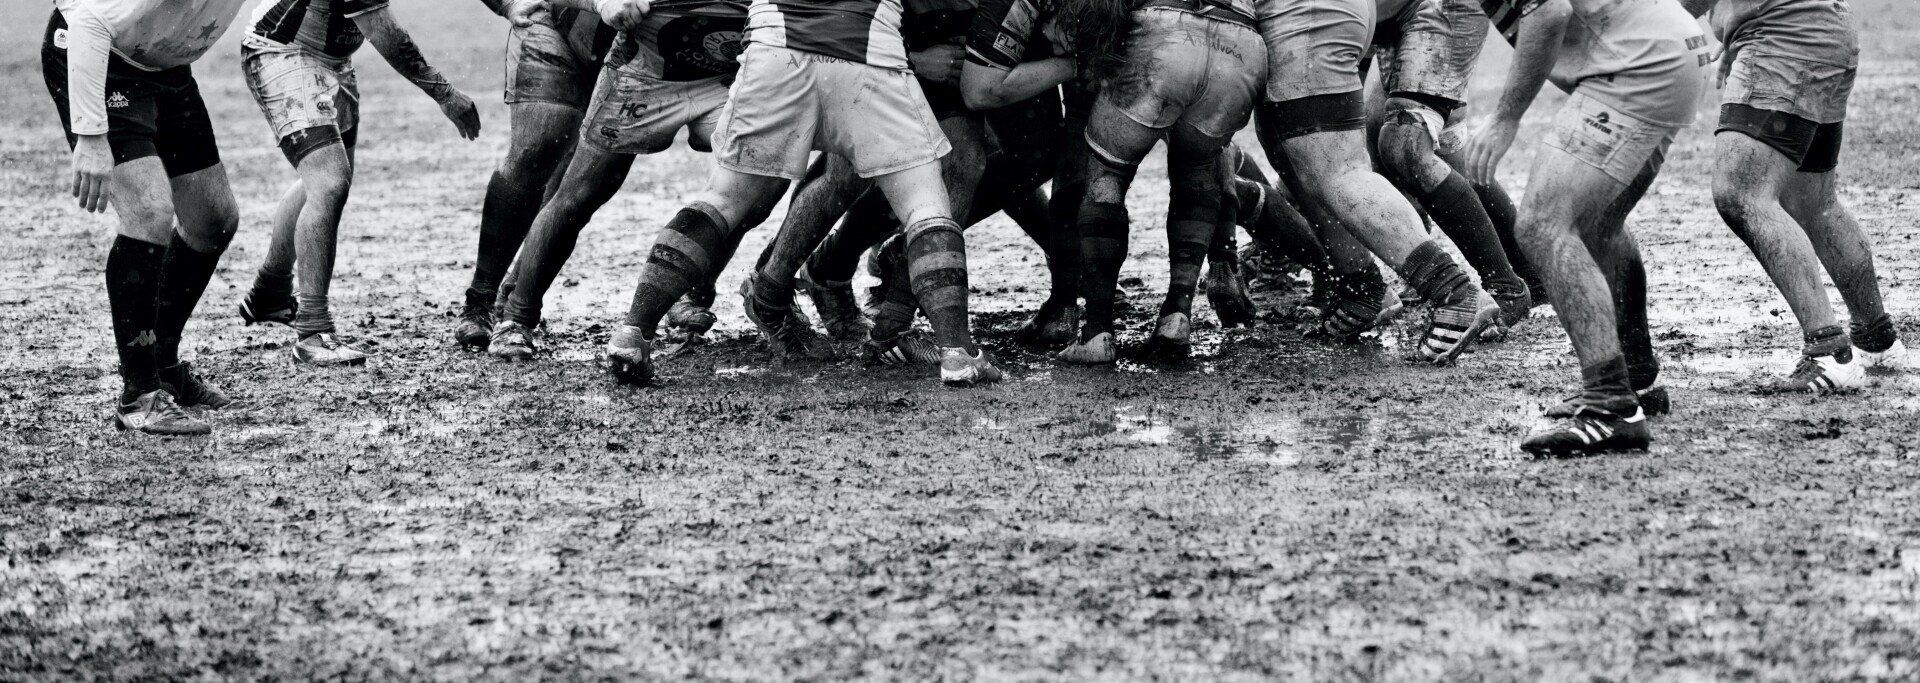 Immagine Rugby bianco e nero